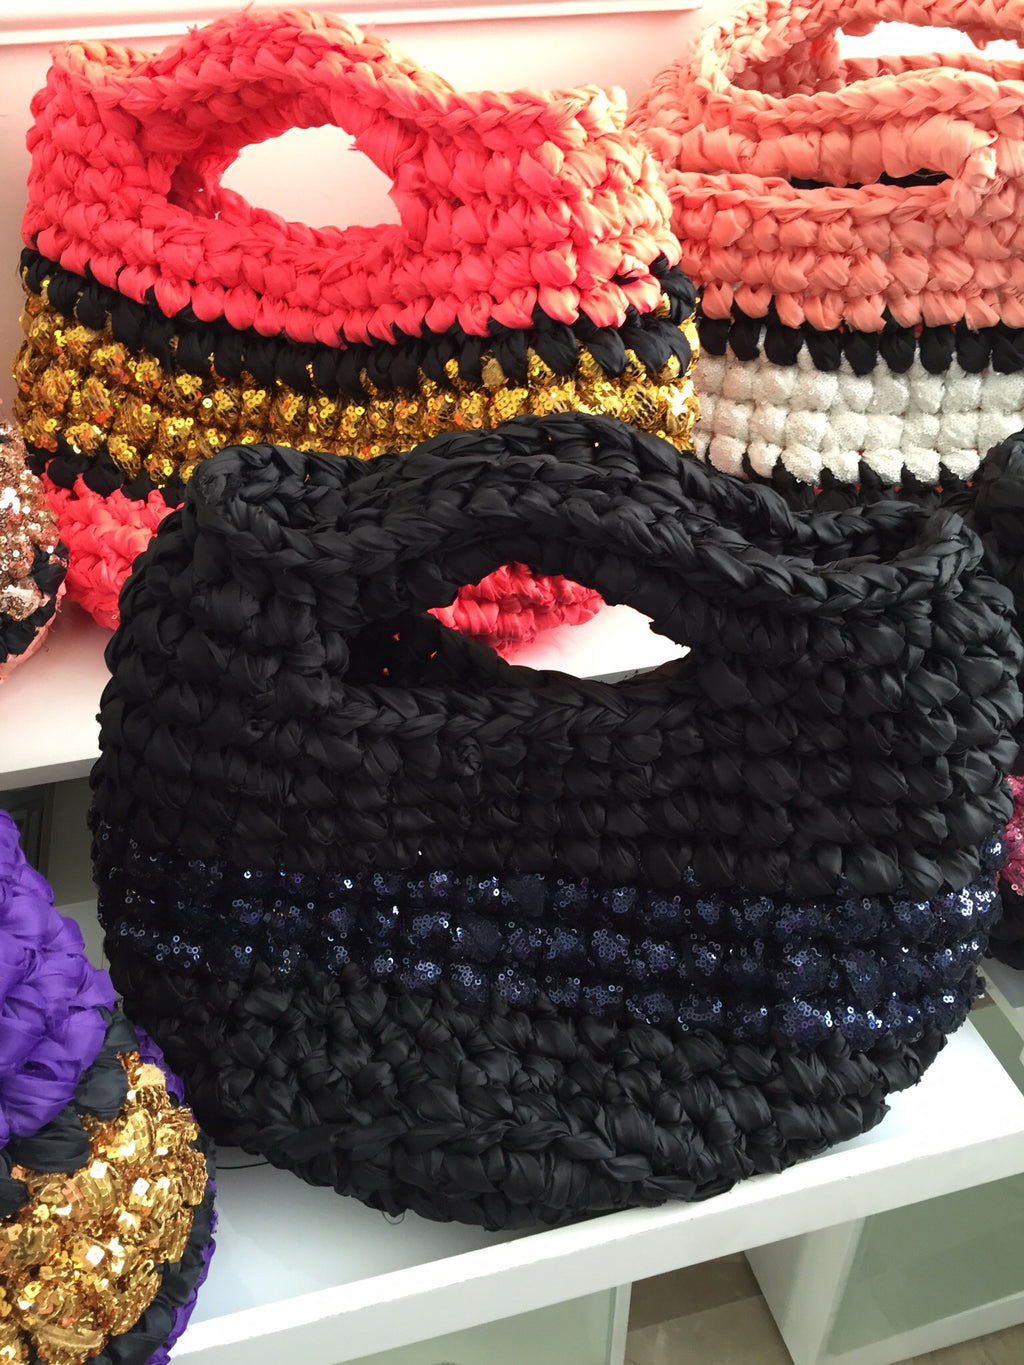 Crochet bag, glitter sequence.